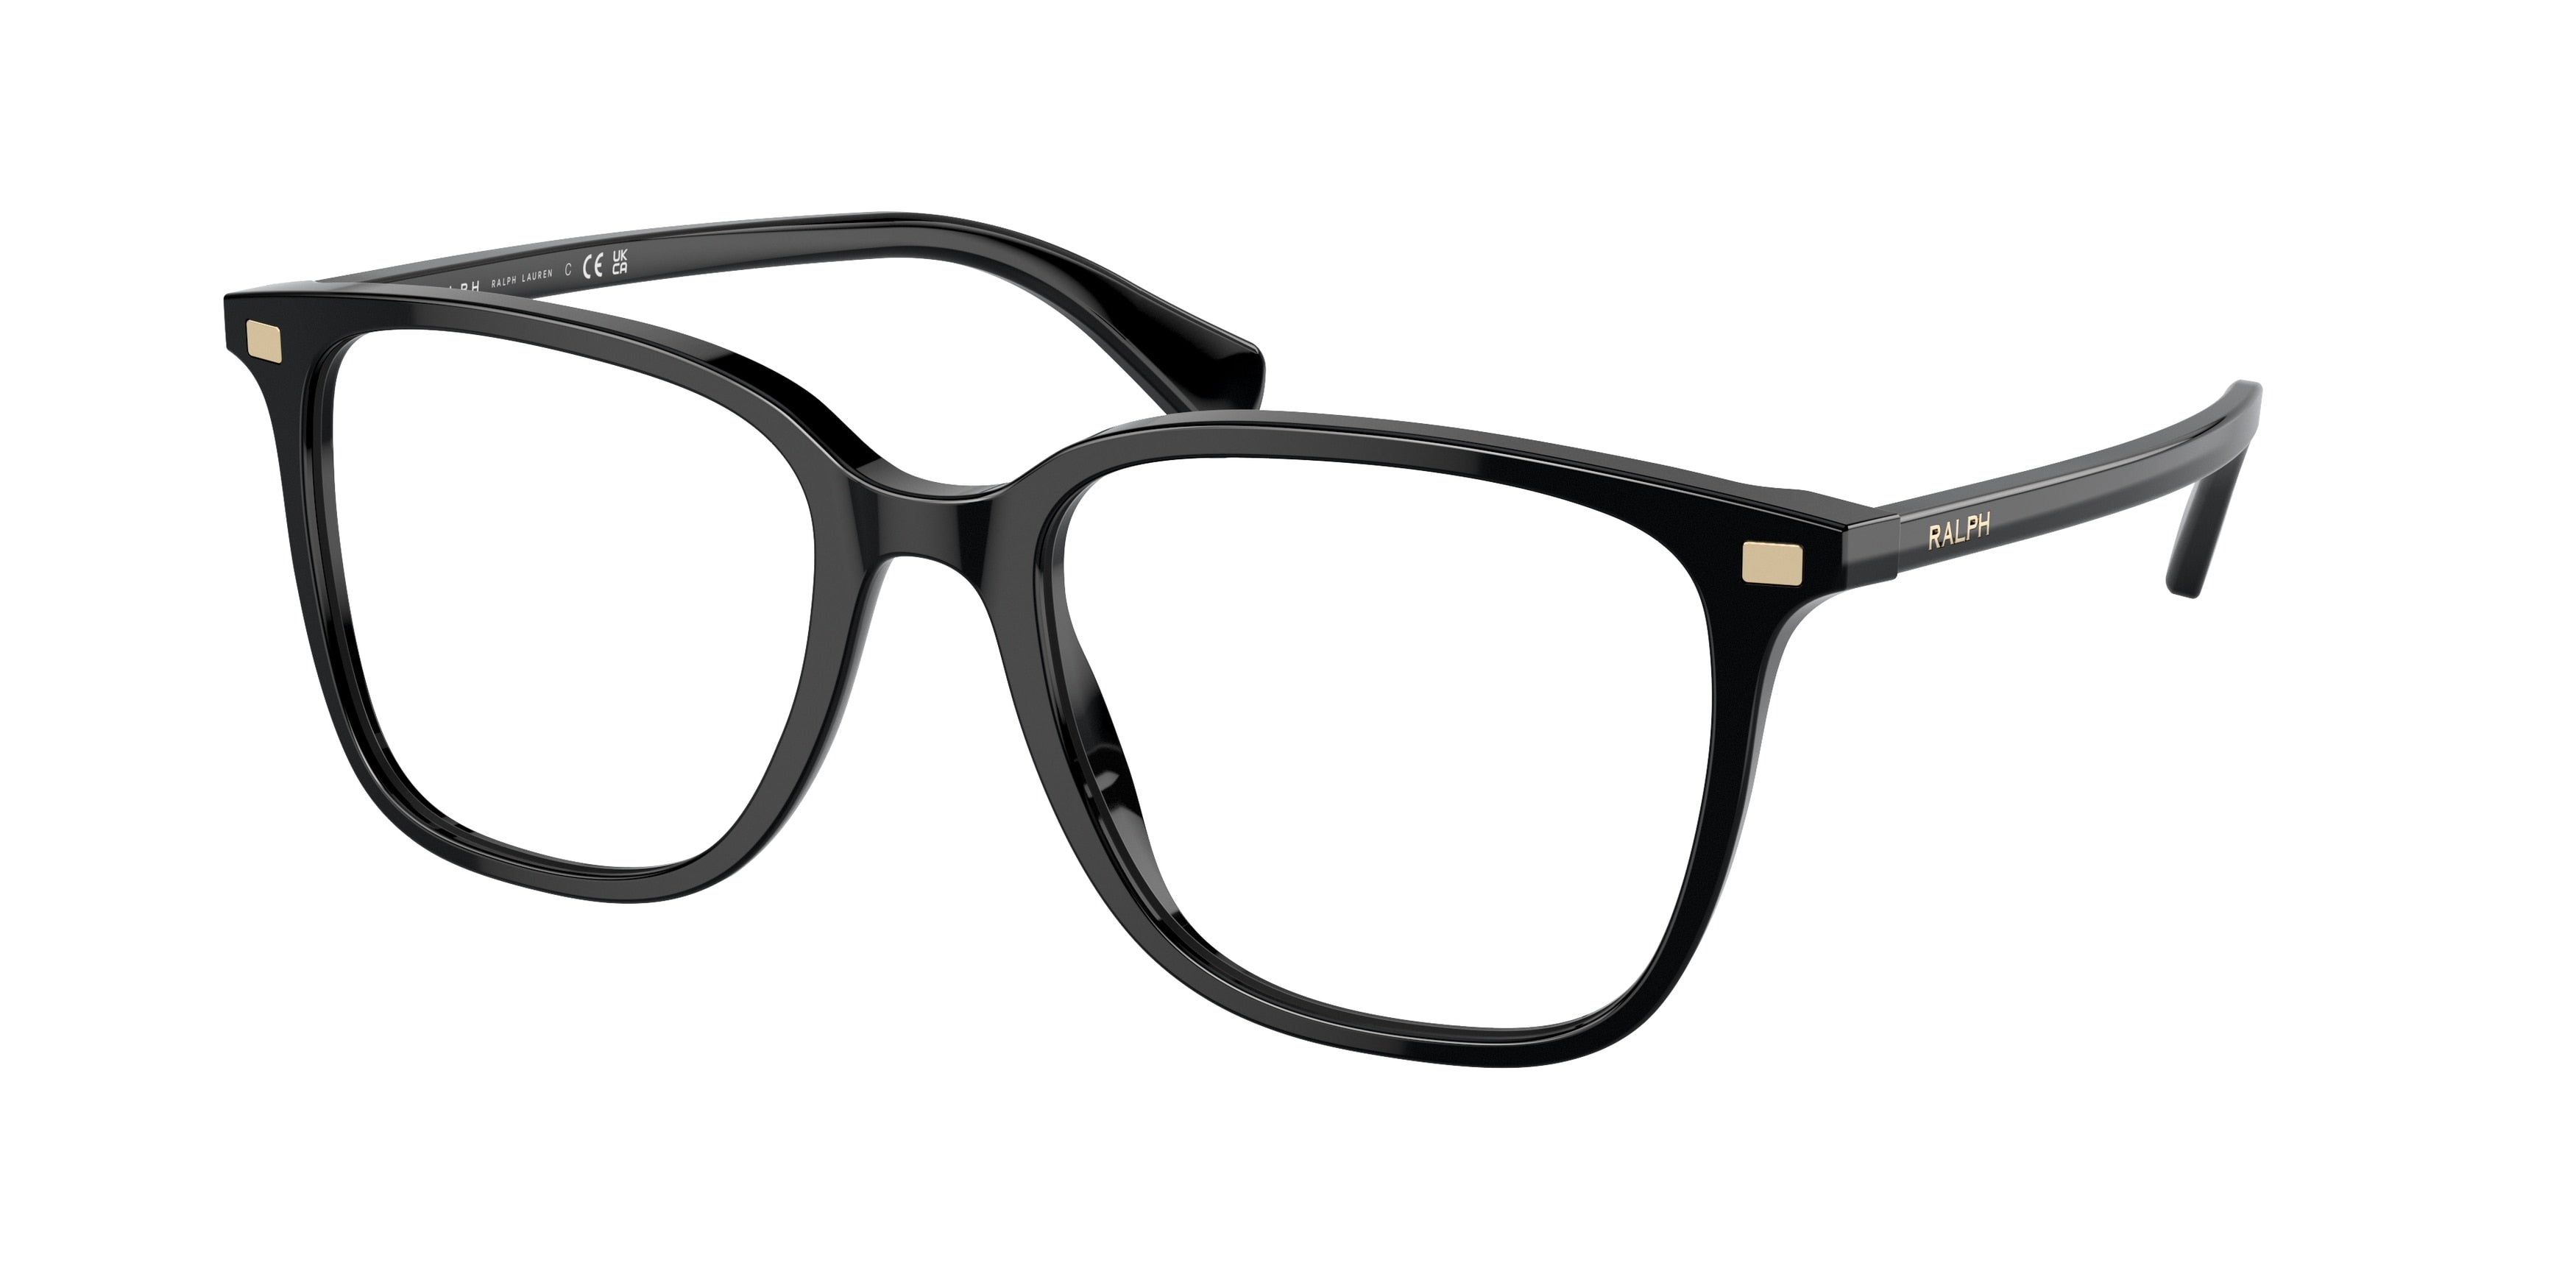 Ralph RA7147 Square Eyeglasses  5001-Shiny Black 55-145-19 - Color Map Black